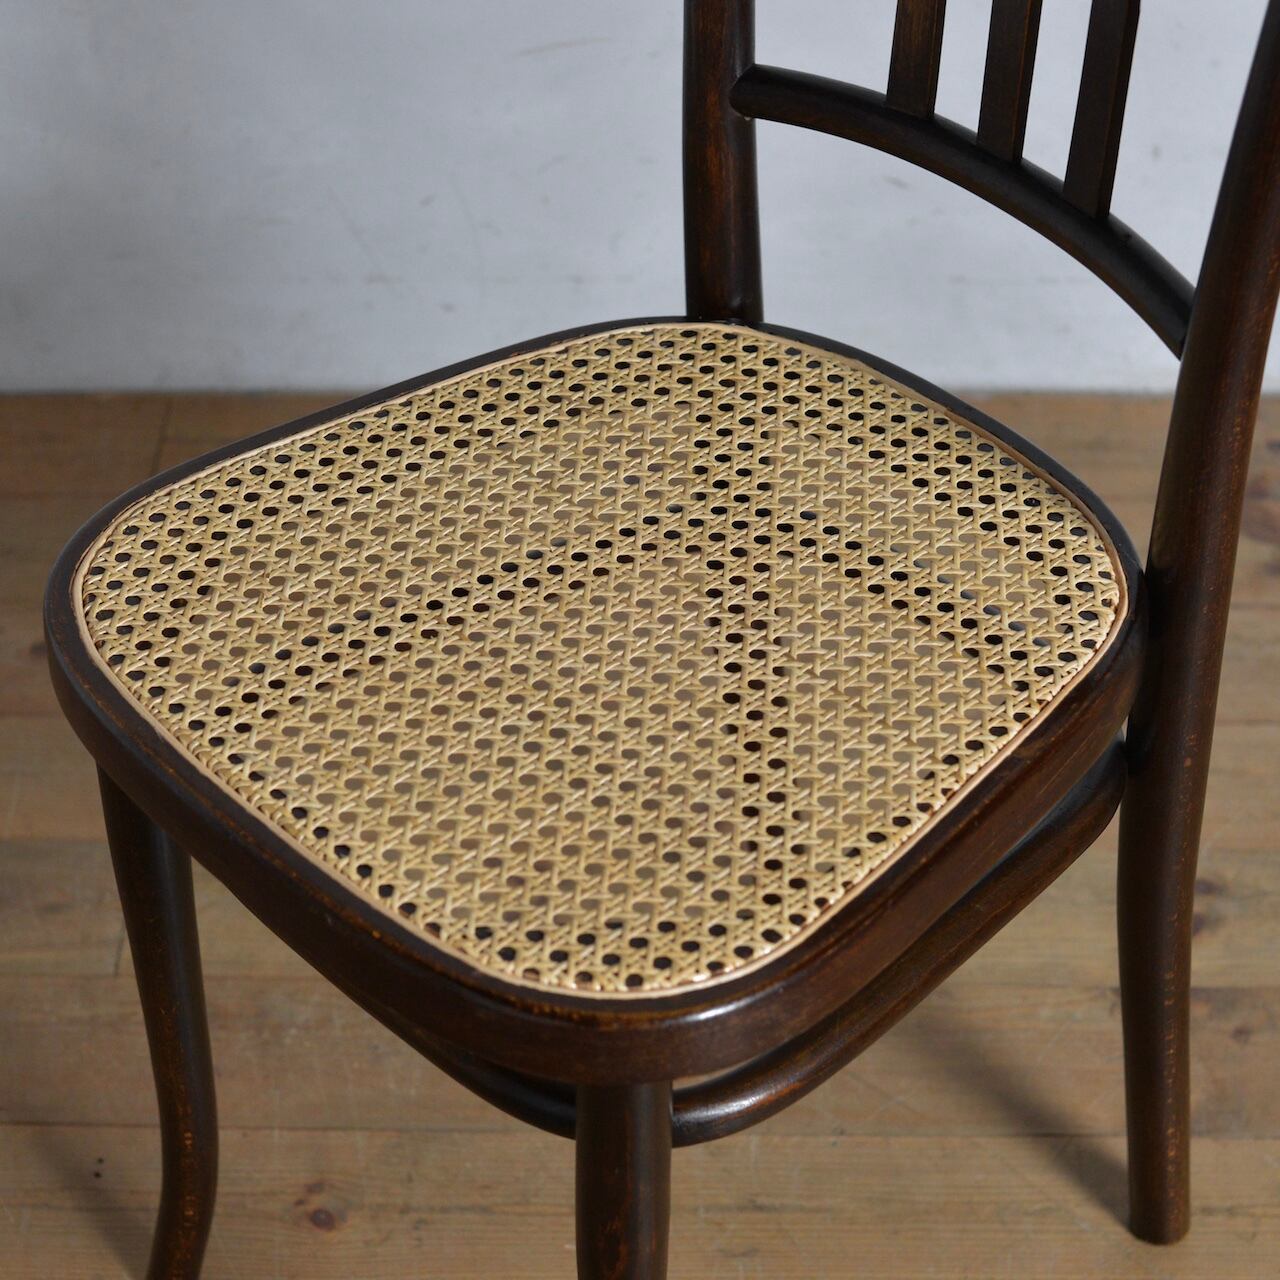 Thonet Bentwood Chair / トーネット ベントウッド チェア【B】〈トーネット社・ミヒャエルトーネット・ラタンチェア・ダイニングチェア〉2806-0275 【B】